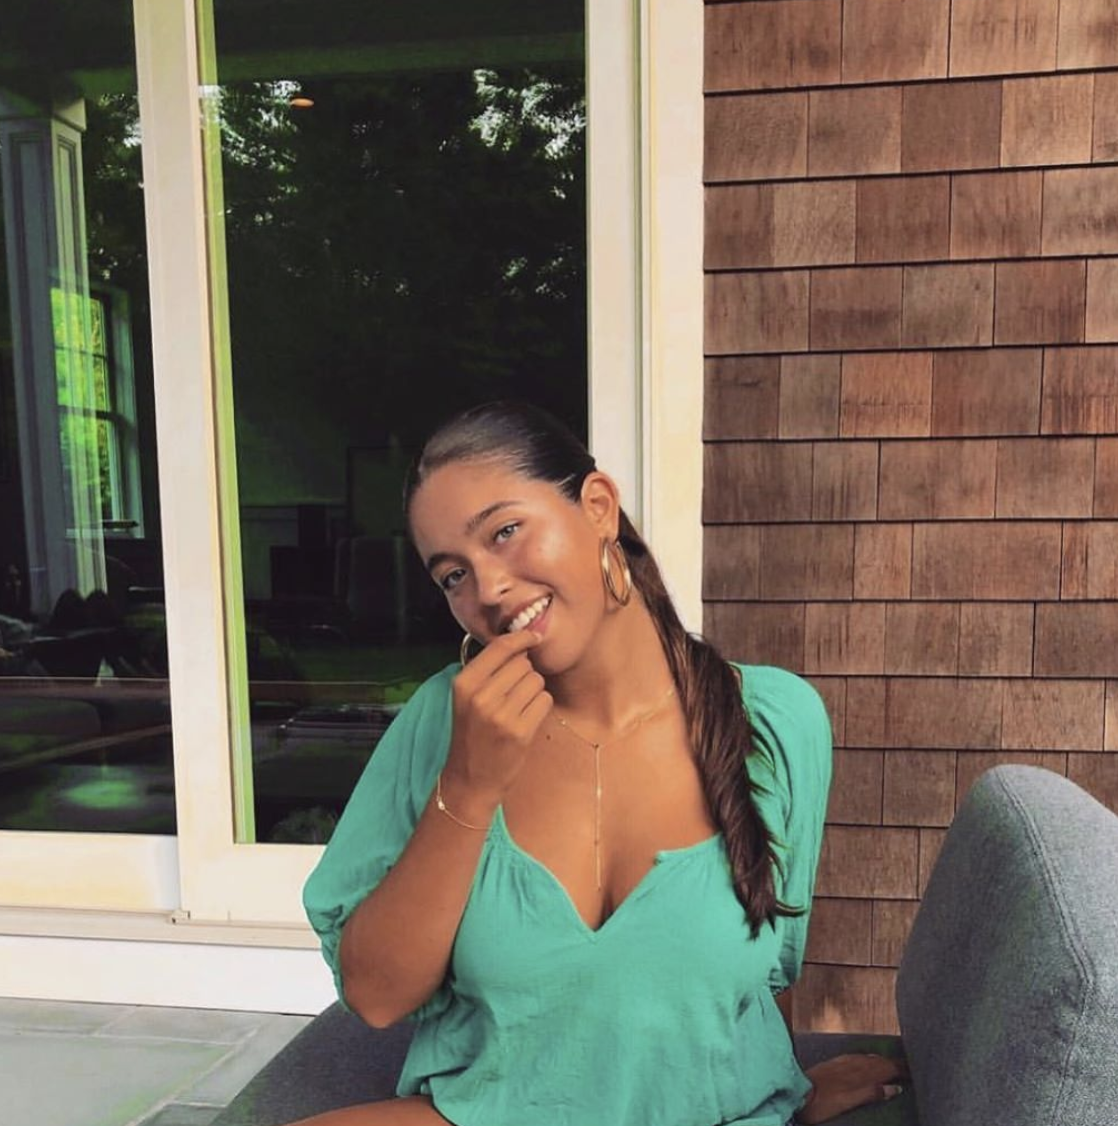 Interracial Xxx Kelly Ripa - Who is Lola Consuelos? - Meet Kelly Ripa's NYU Student Daughter